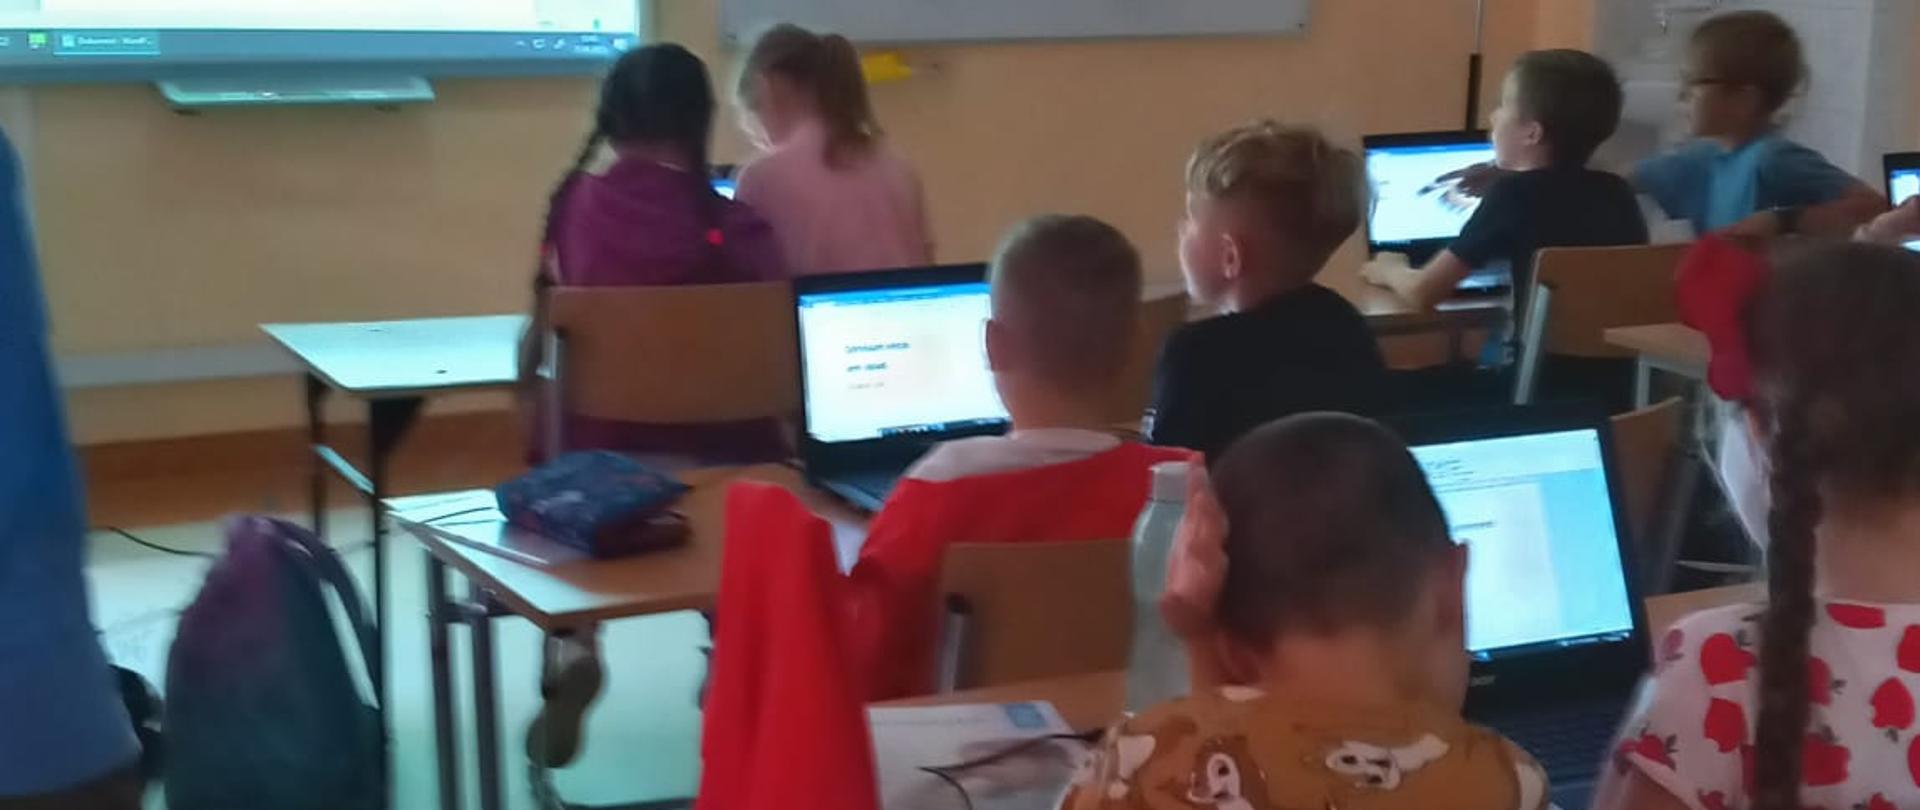 Sala komputerowa, na górze po lewej stronie tablica multimedialna, po prawej stronie biała tablica. Poniżej uczniowie siedzący w ławkach, patrzący w ekrany laptopów. 